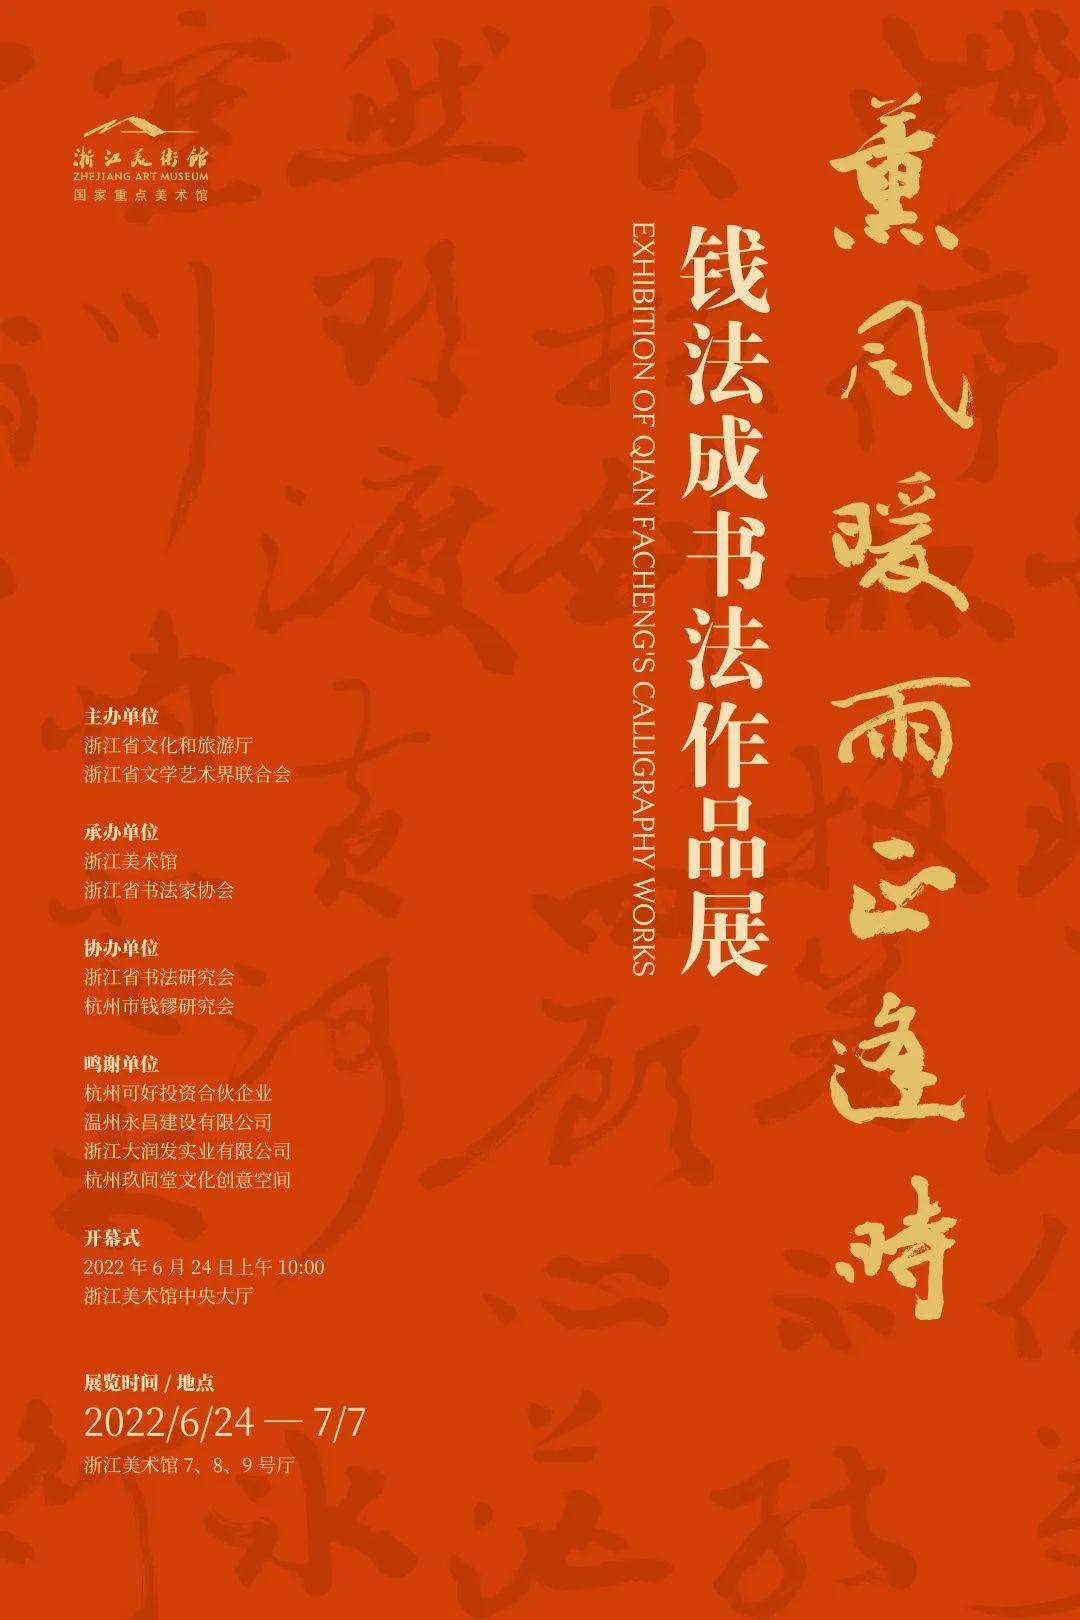 主办单位：浙江省文化和旅游厅、浙江省文学艺术界联合会